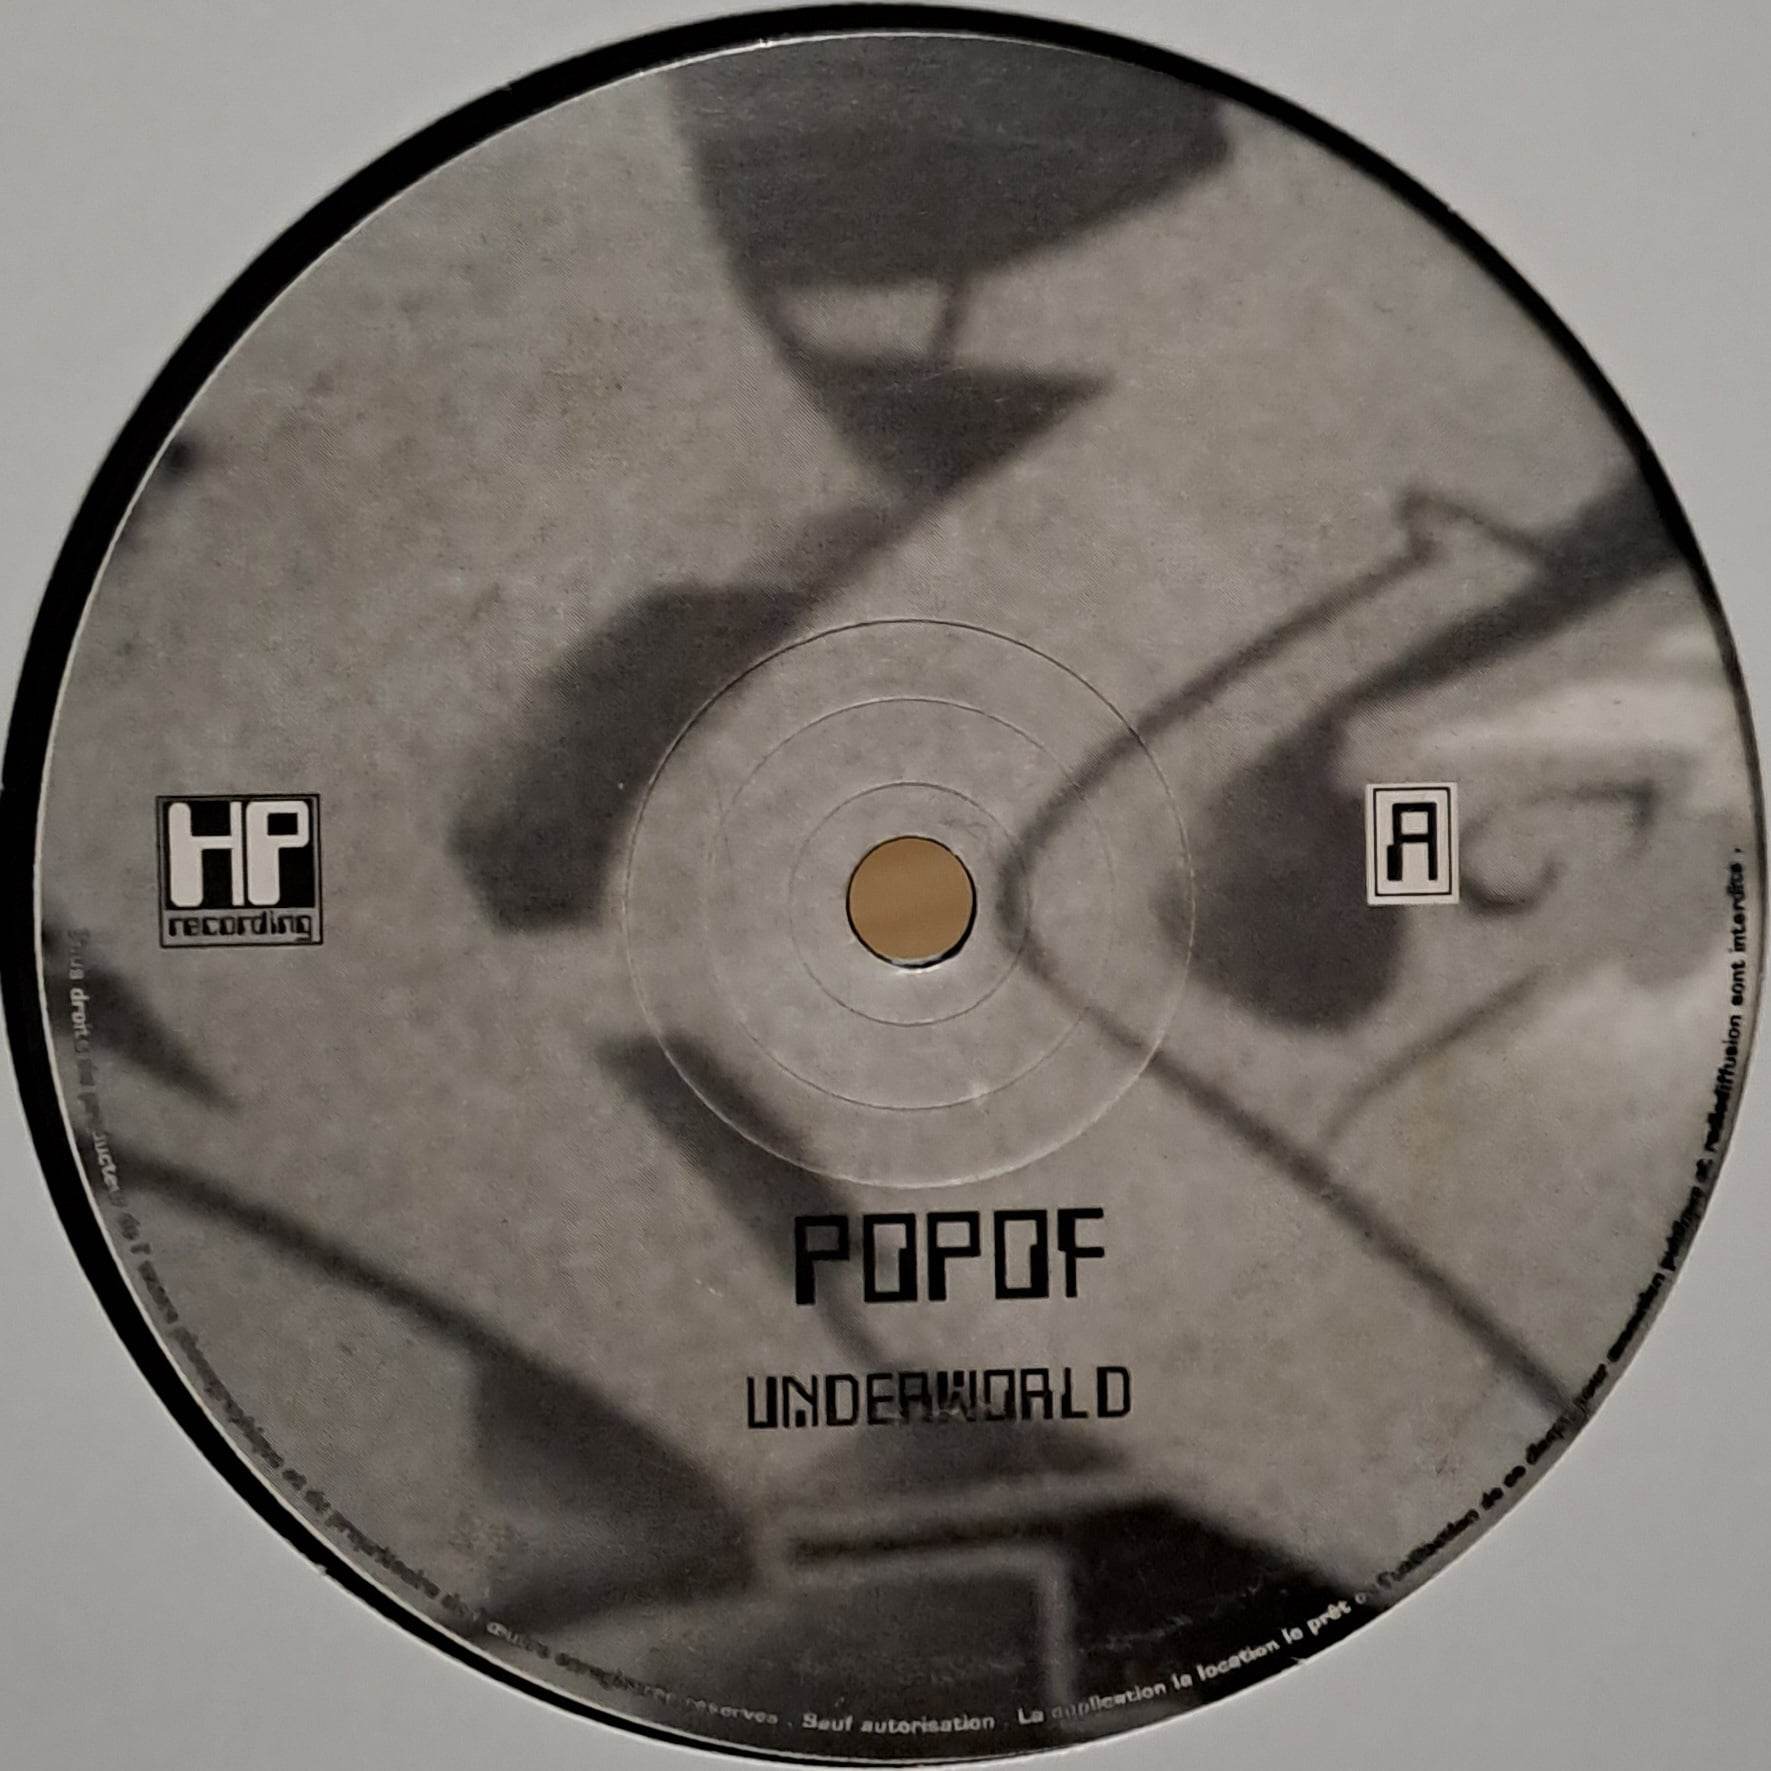 Hokus Pokus 2001 (seulement un disque) - vinyle freetekno